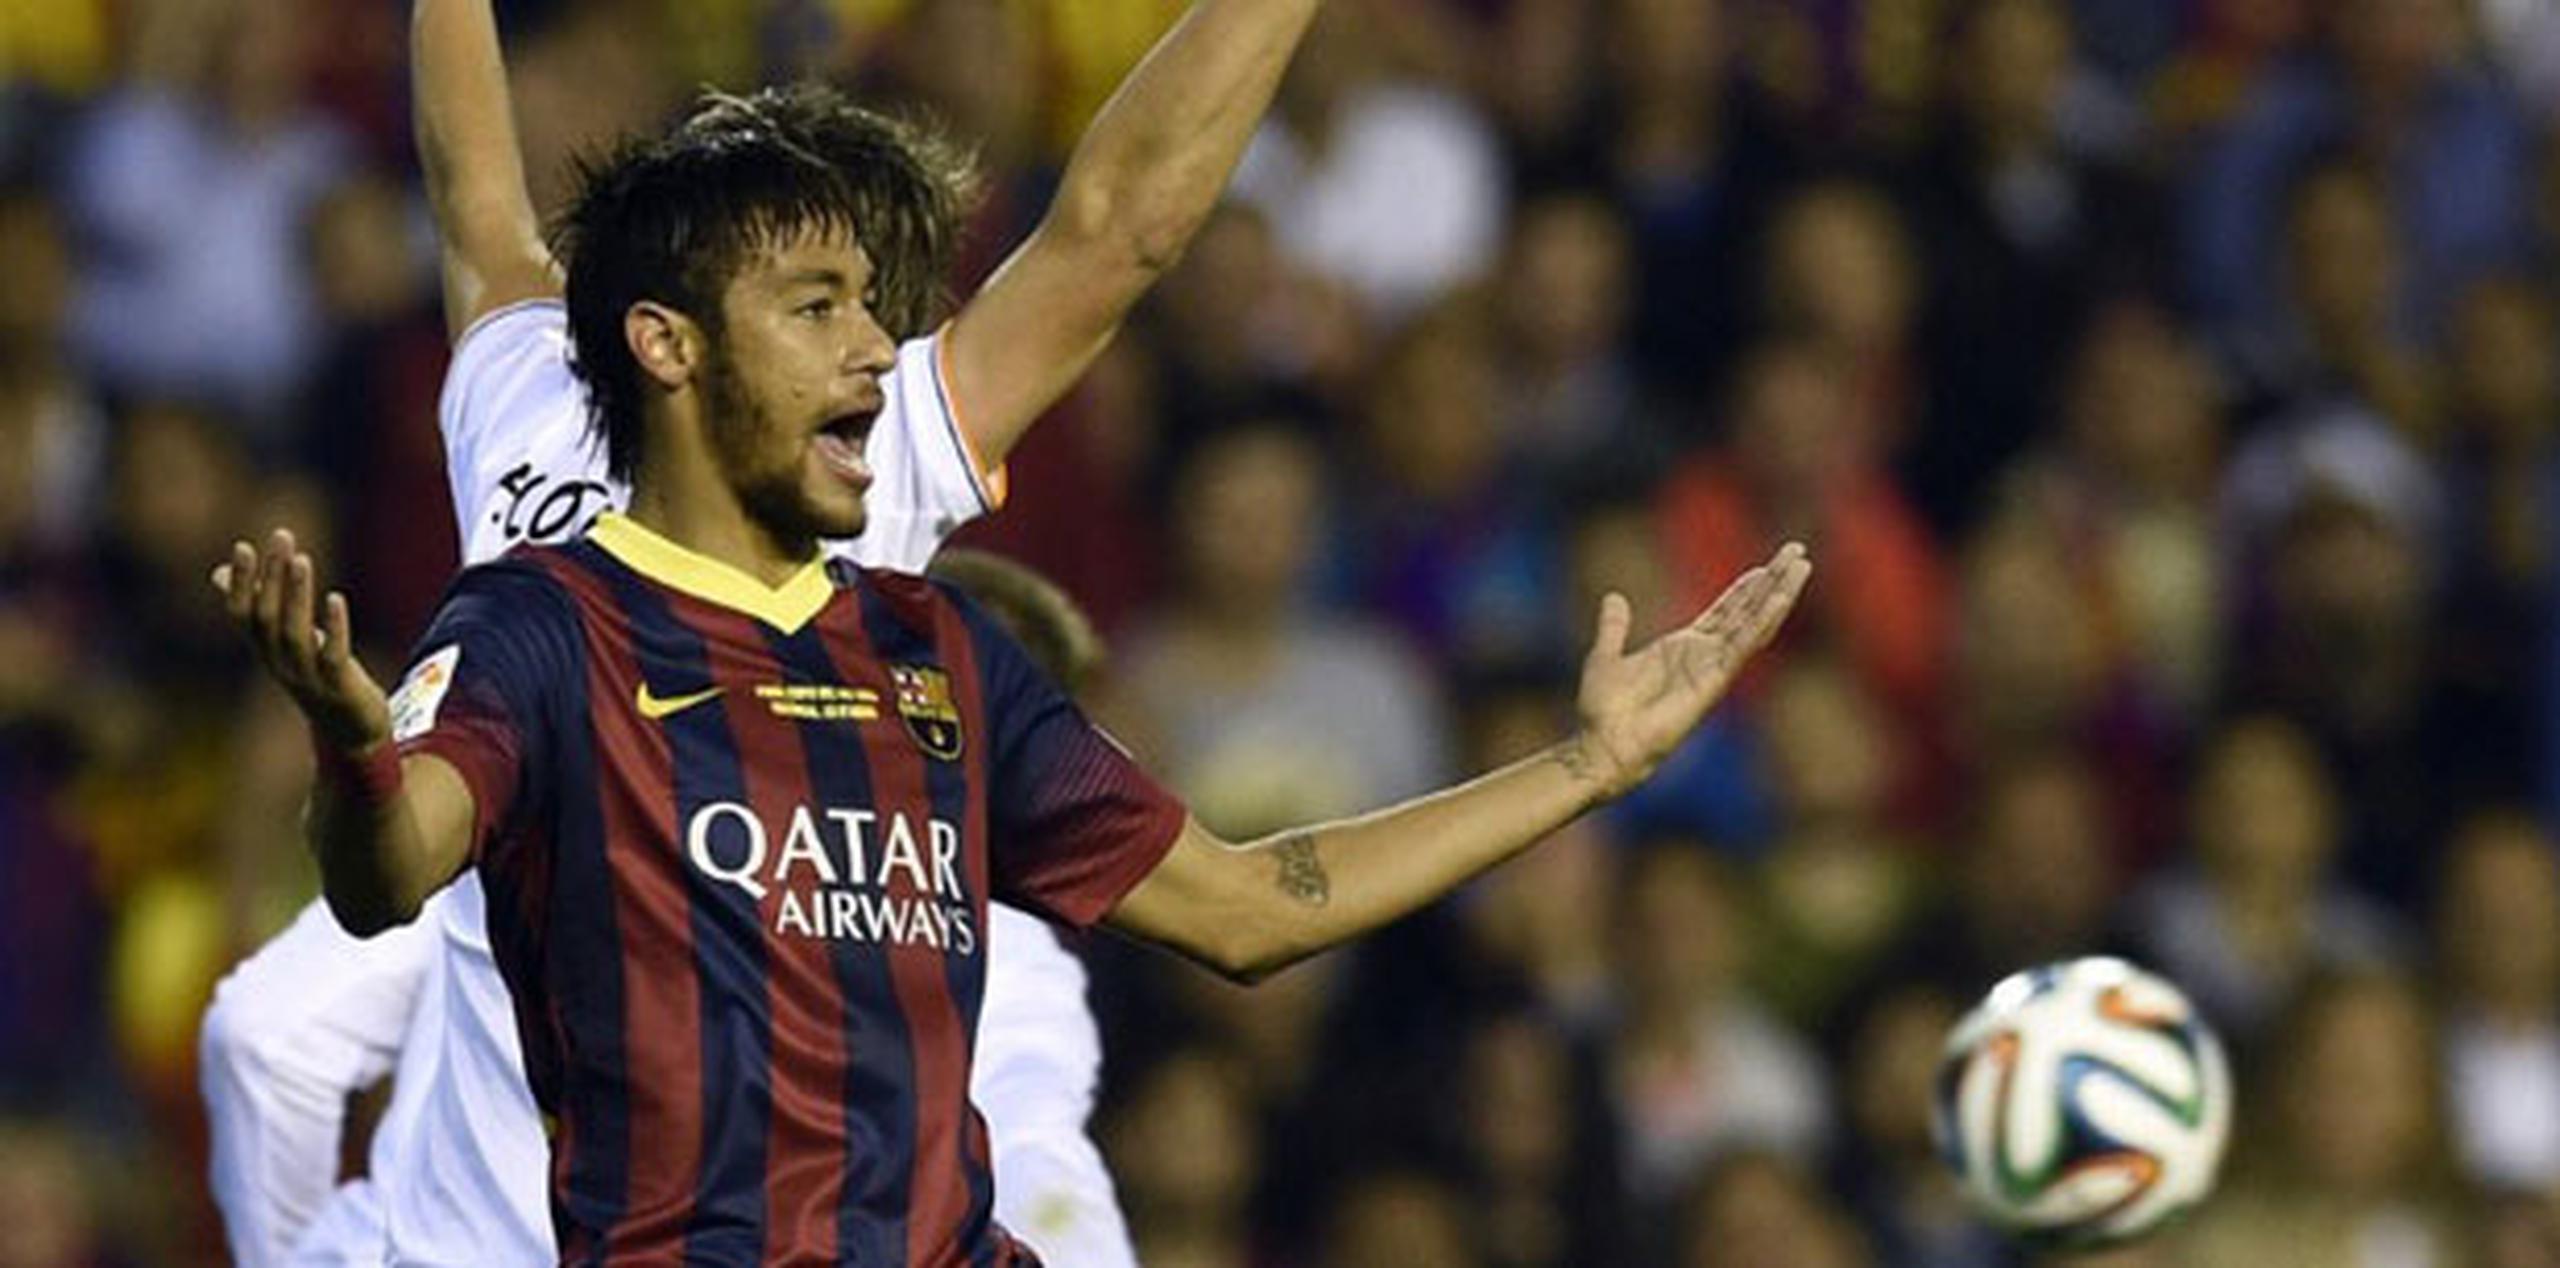 Barcelona indicó que Neymar sufrió una "contusión" en su pie izquierdo durante la final. (AFP)